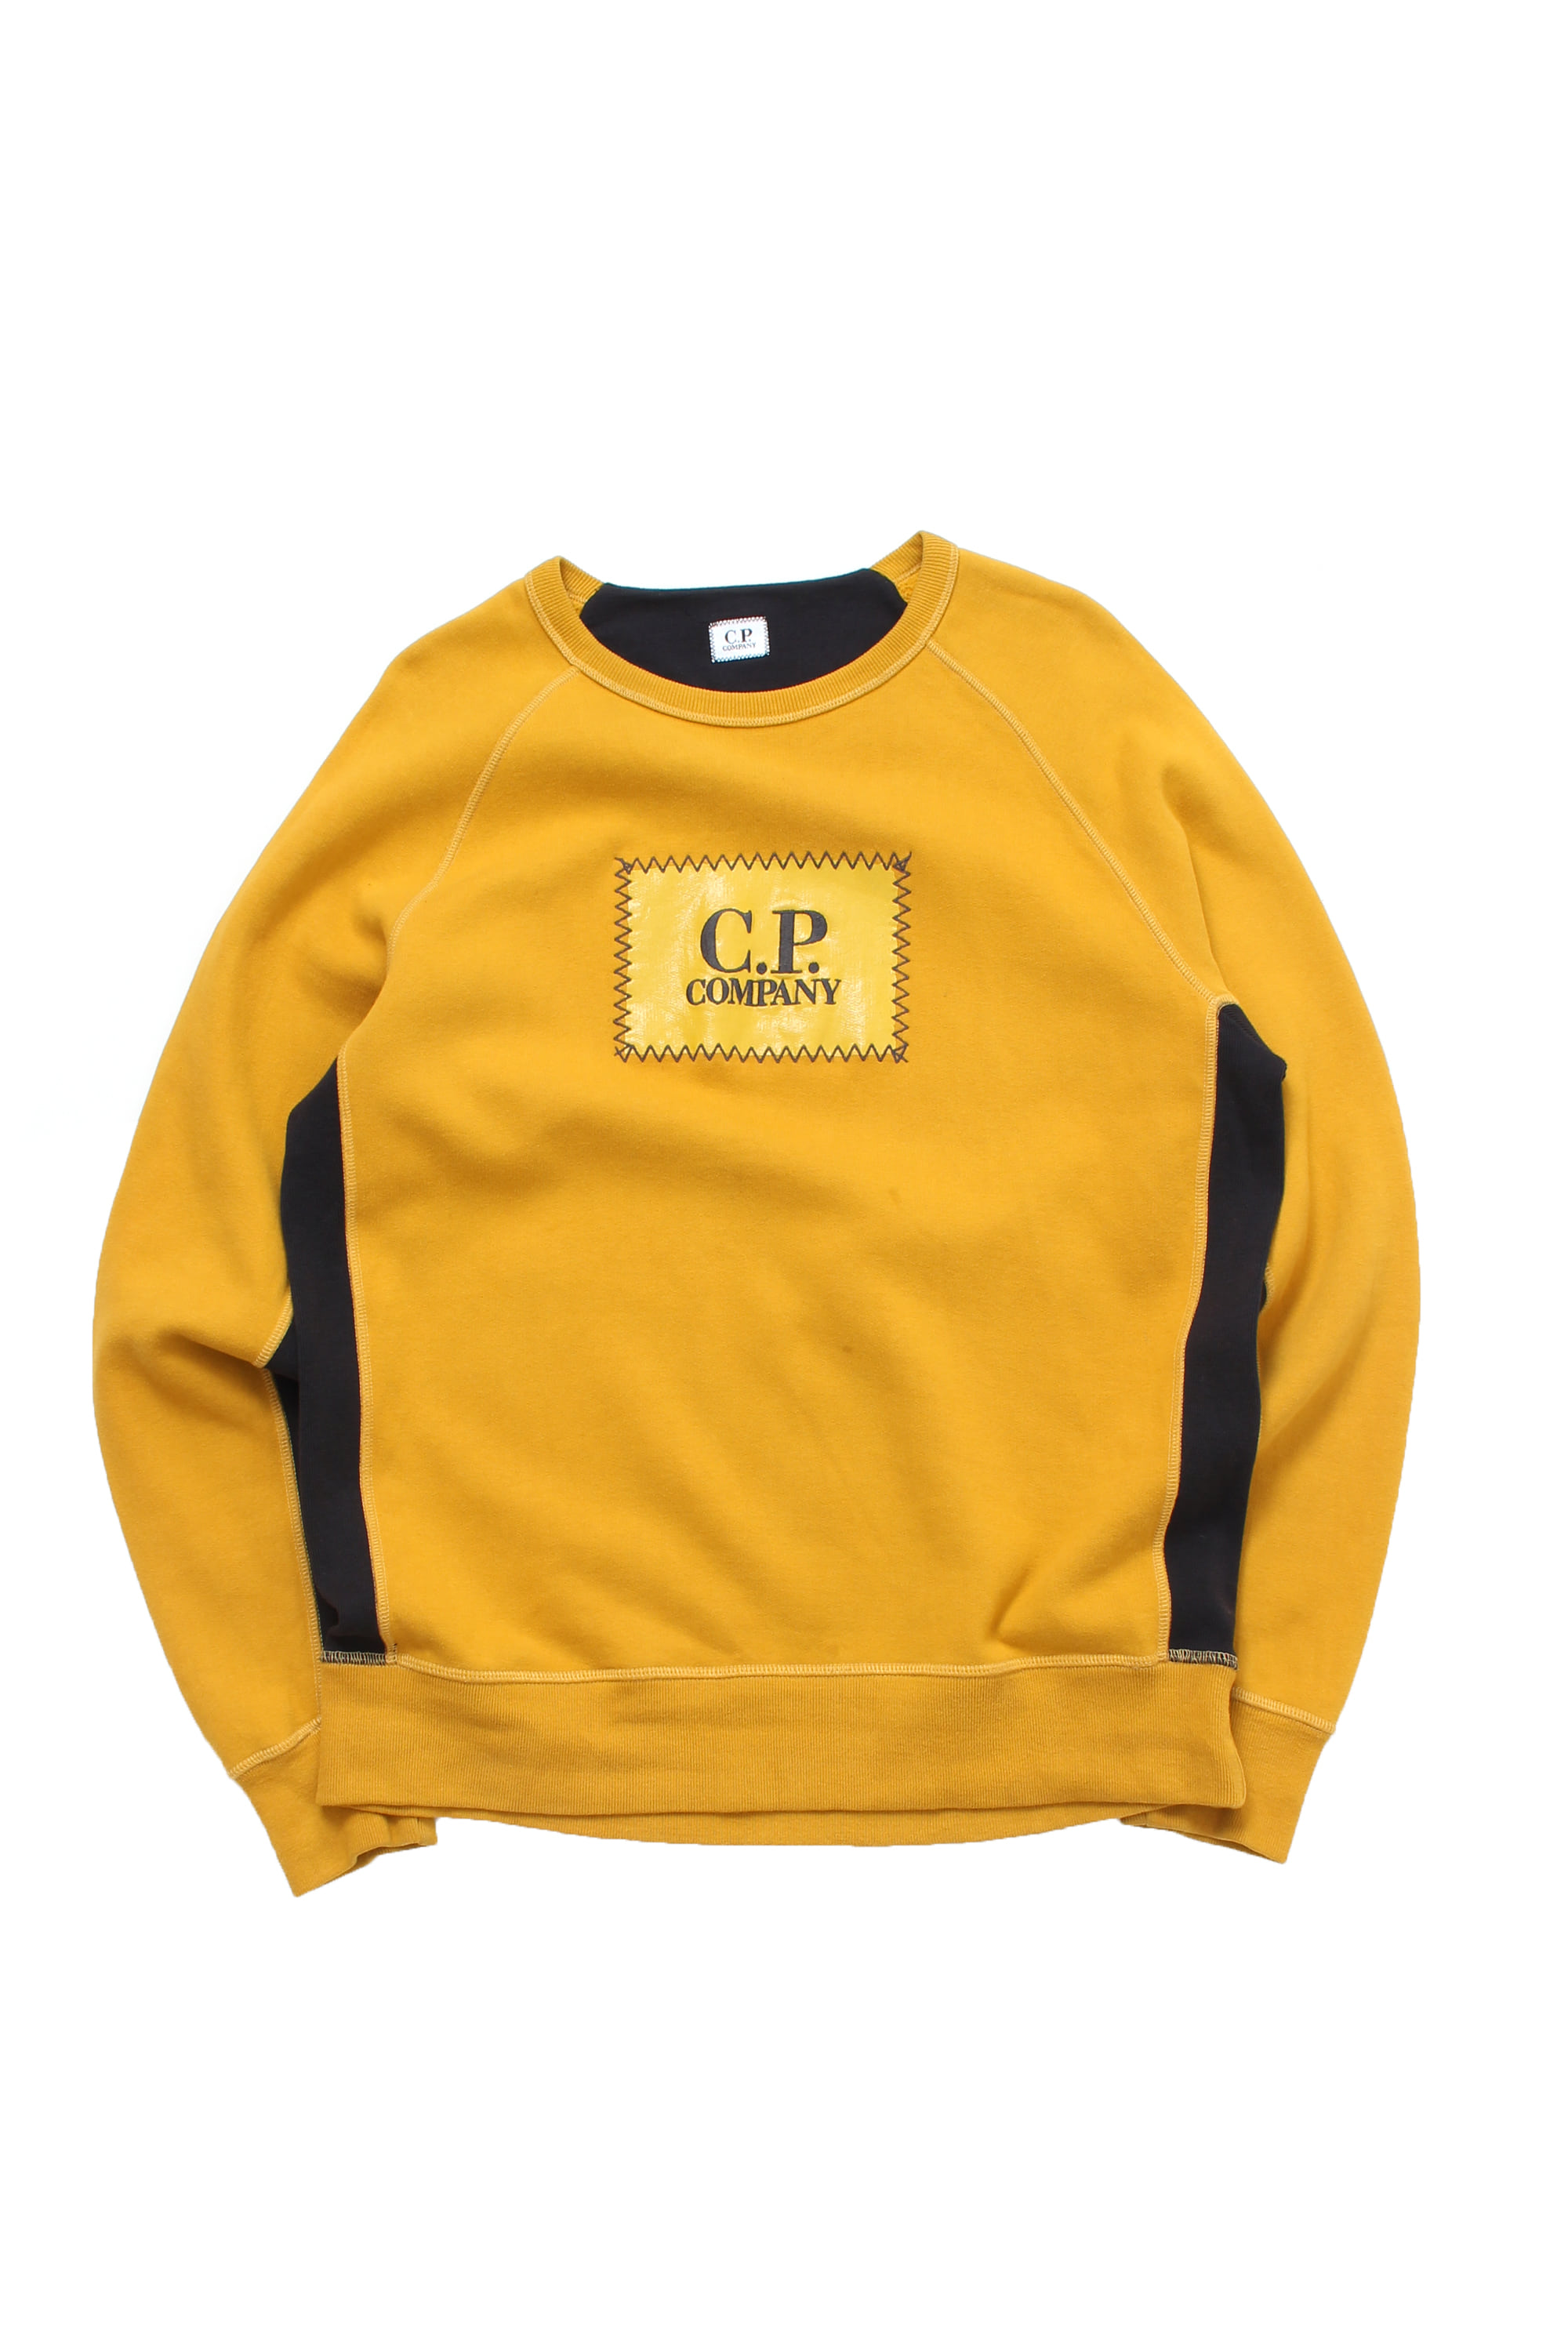 C.P COMPANY Sweatshirts